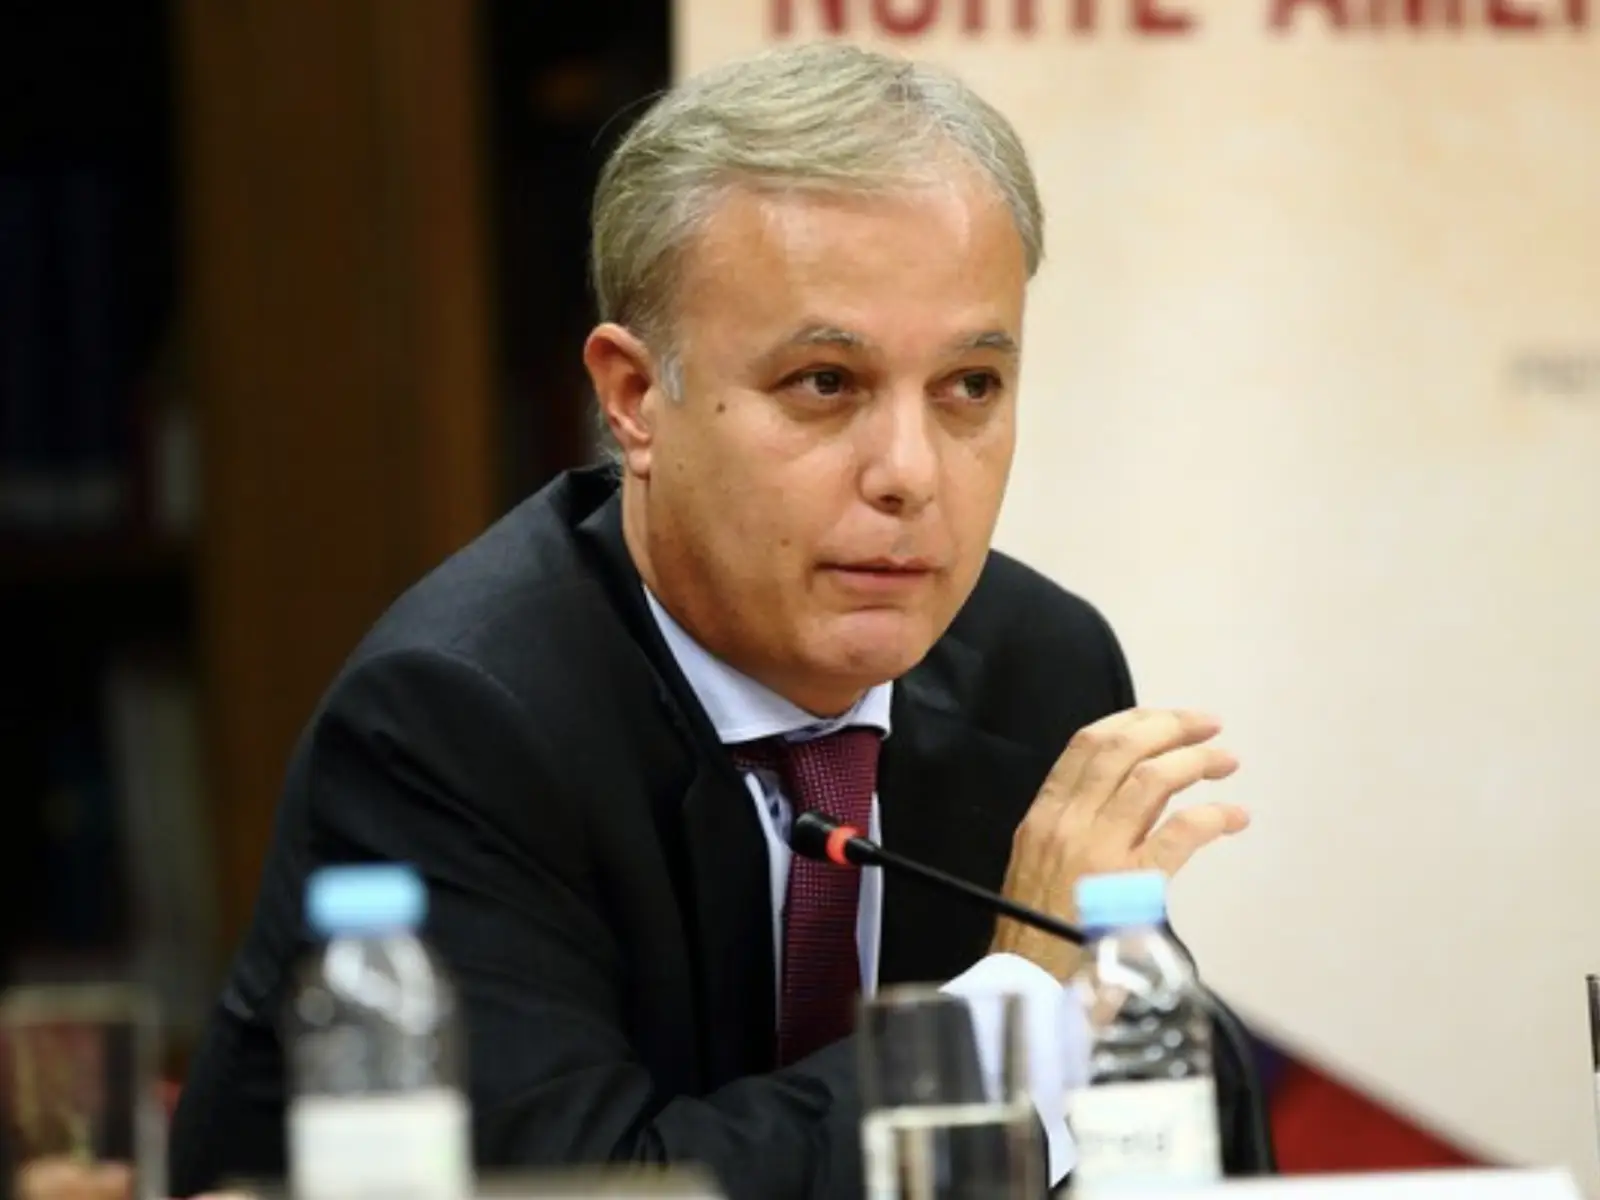 Tiago Moreira de Sá, ancien député PSD, est le numéro deux d’Arrivée aux européennes